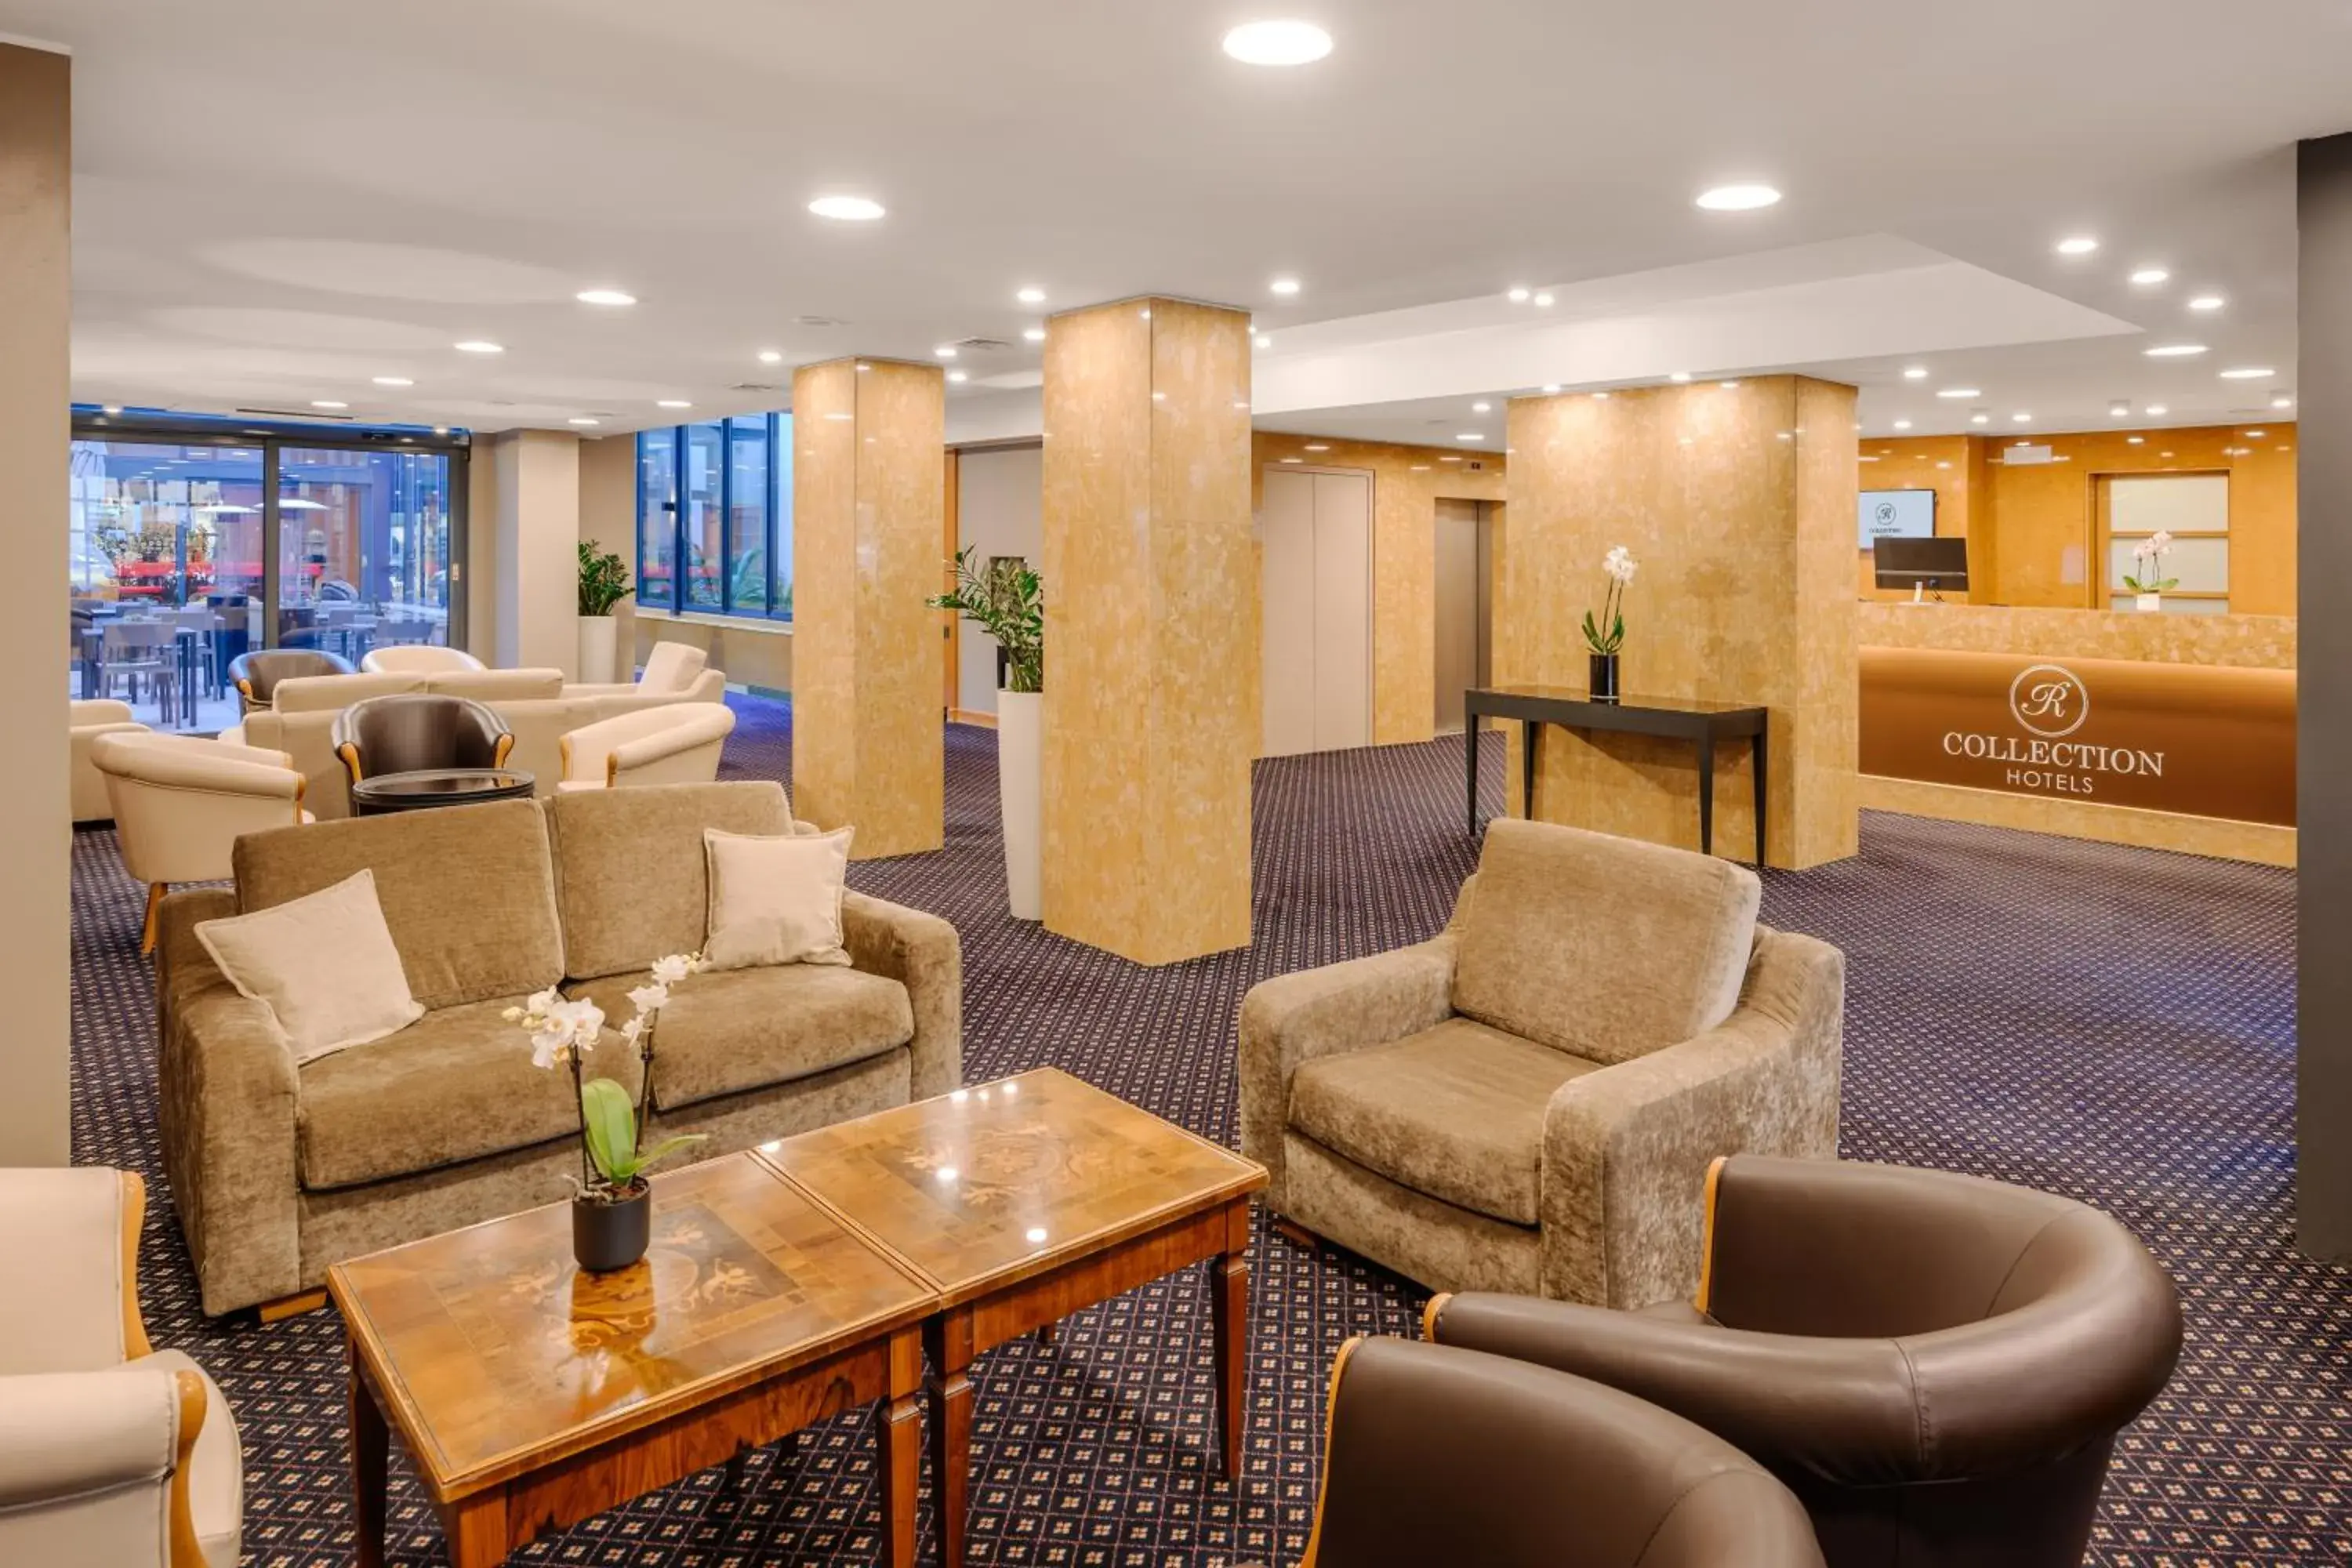 Lobby or reception, Lobby/Reception in City Life Hotel Poliziano